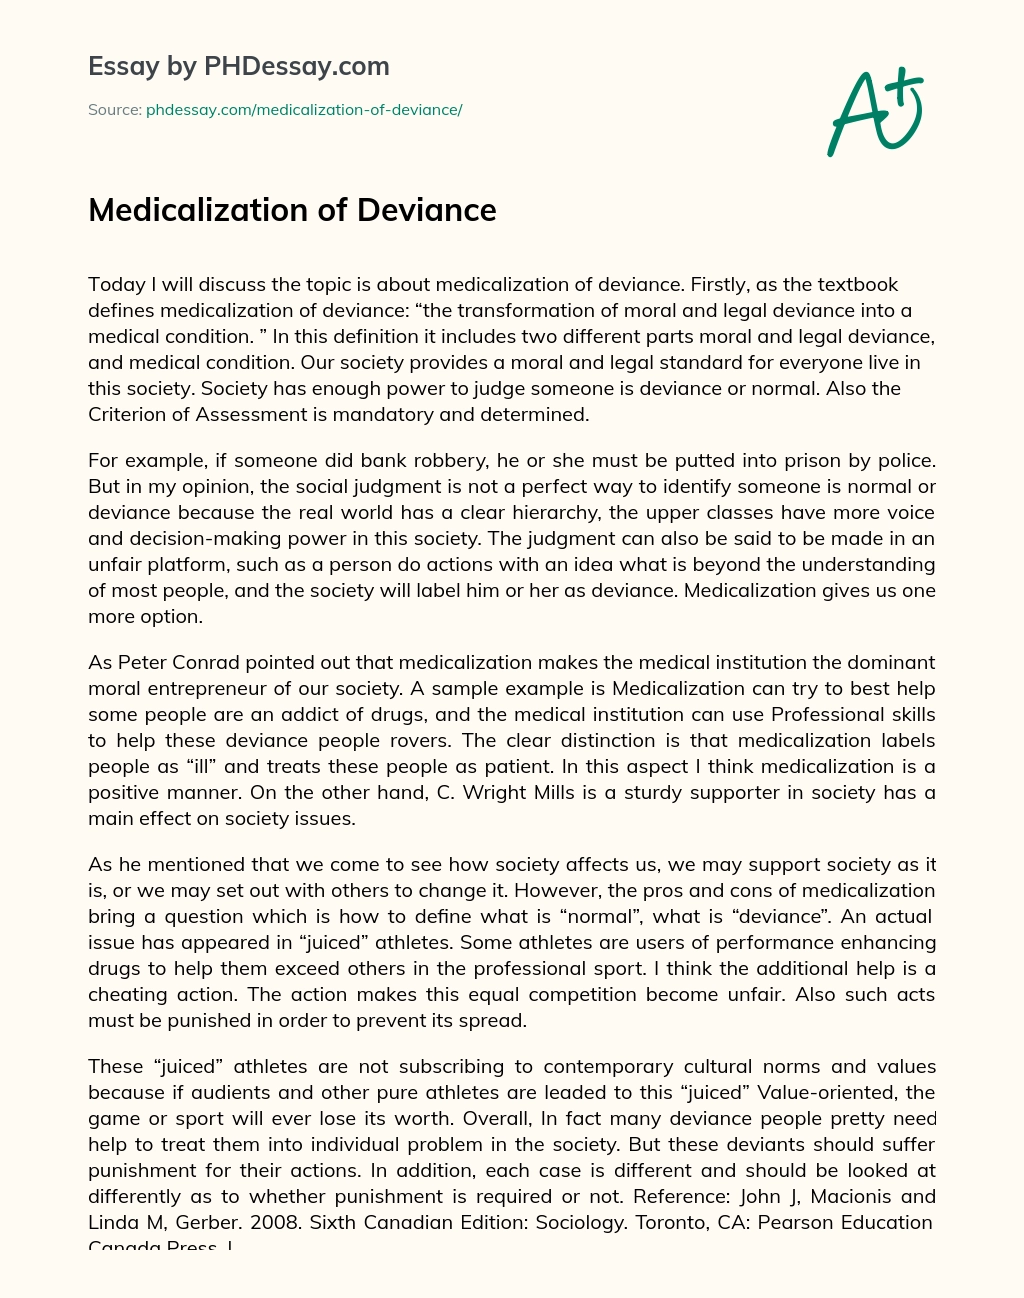 Medicalization of Deviance essay